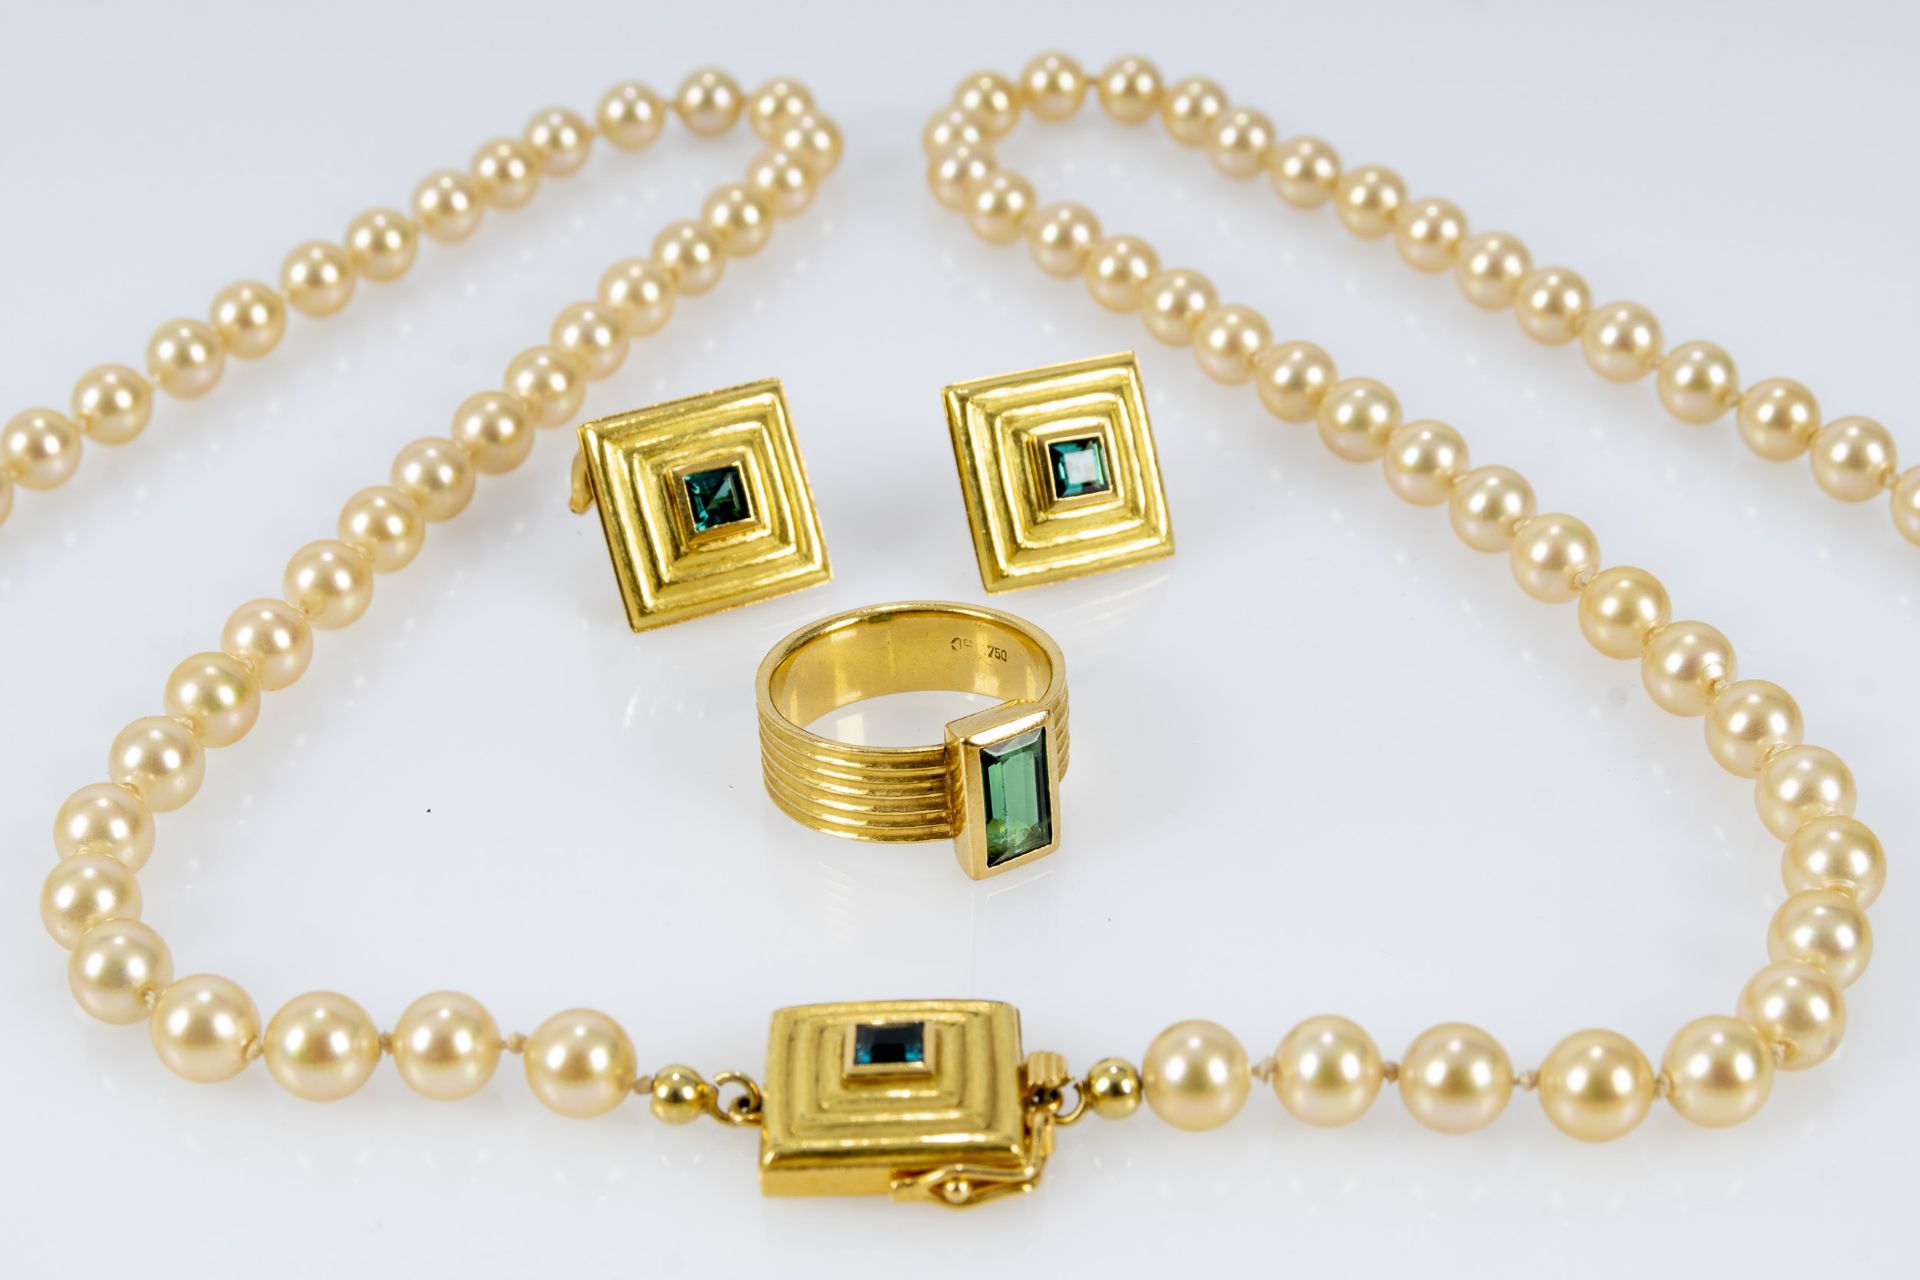 Einzigartiges 4-teiliges Schmuckset, bestehend aus eleganter Perlenkette, Fingerring und passendem 